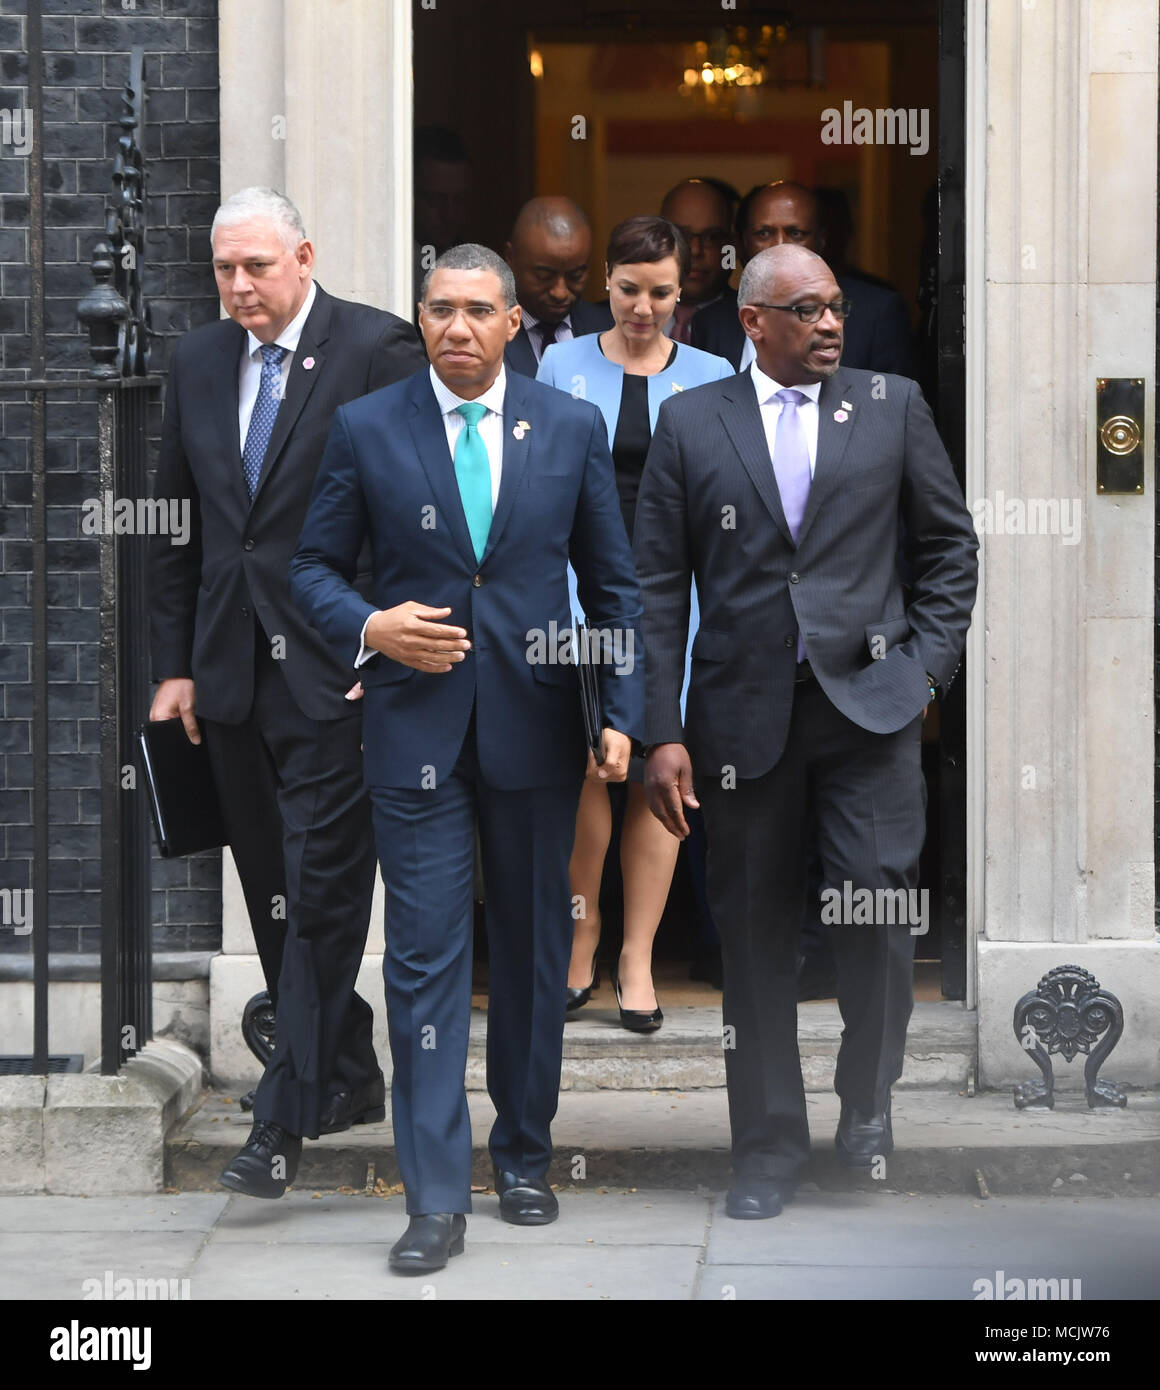 Le premier ministre de la Jamaïque Andrew Holness, avec d'autres membres de la delgation, laissant 10 Downing Street après la rencontre avec le premier ministre Theresa peut par rapport à la génération de l'immigration. controverse Windrush Banque D'Images